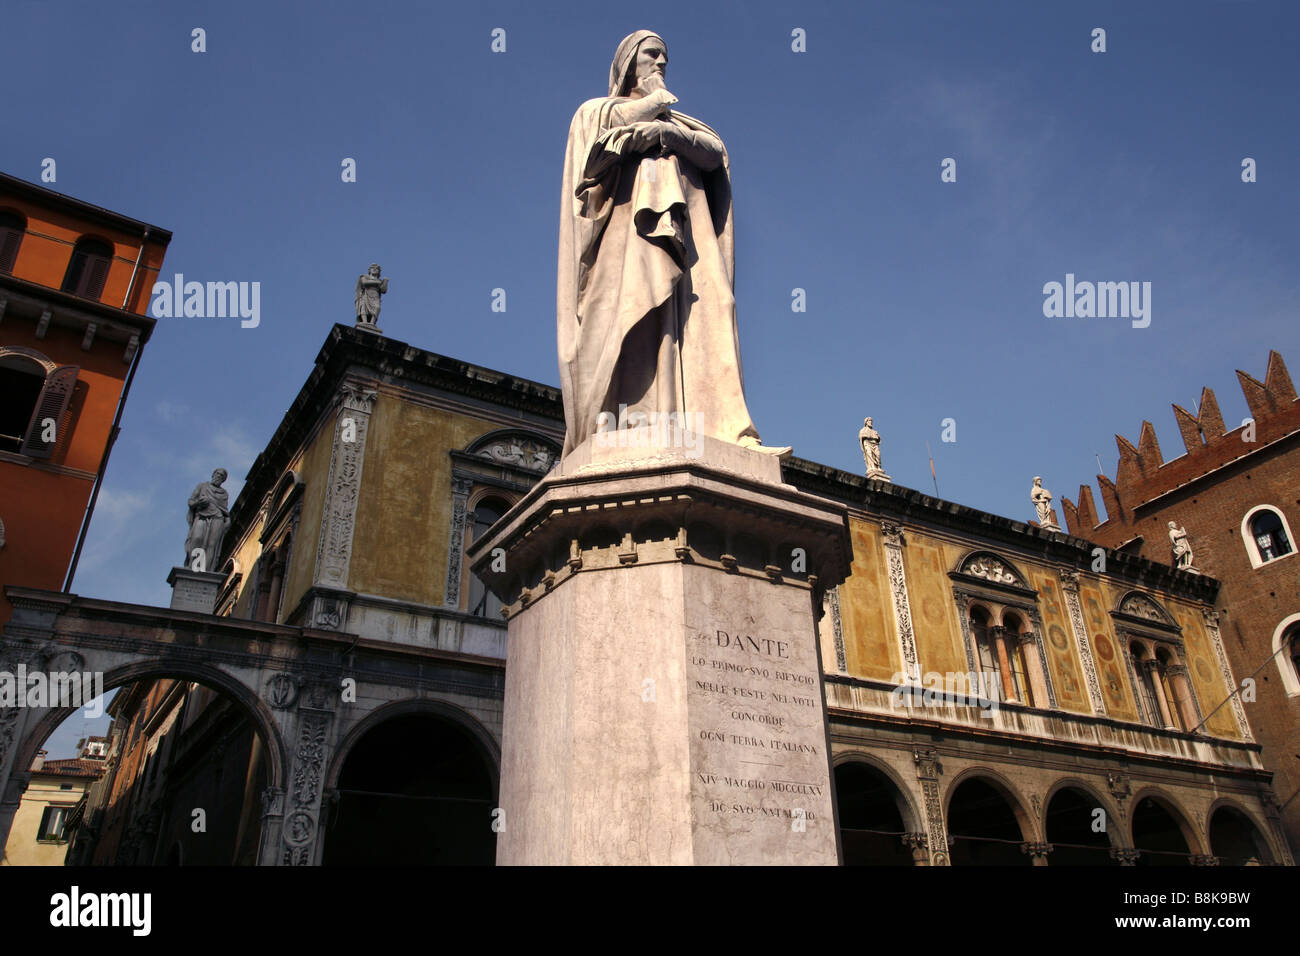 Statue of Dante Alighieri in front of Loggia Consiglio & Palazzo Scaligeri, Piazza dei Signori, Verona, Veneto, Italy Stock Photo